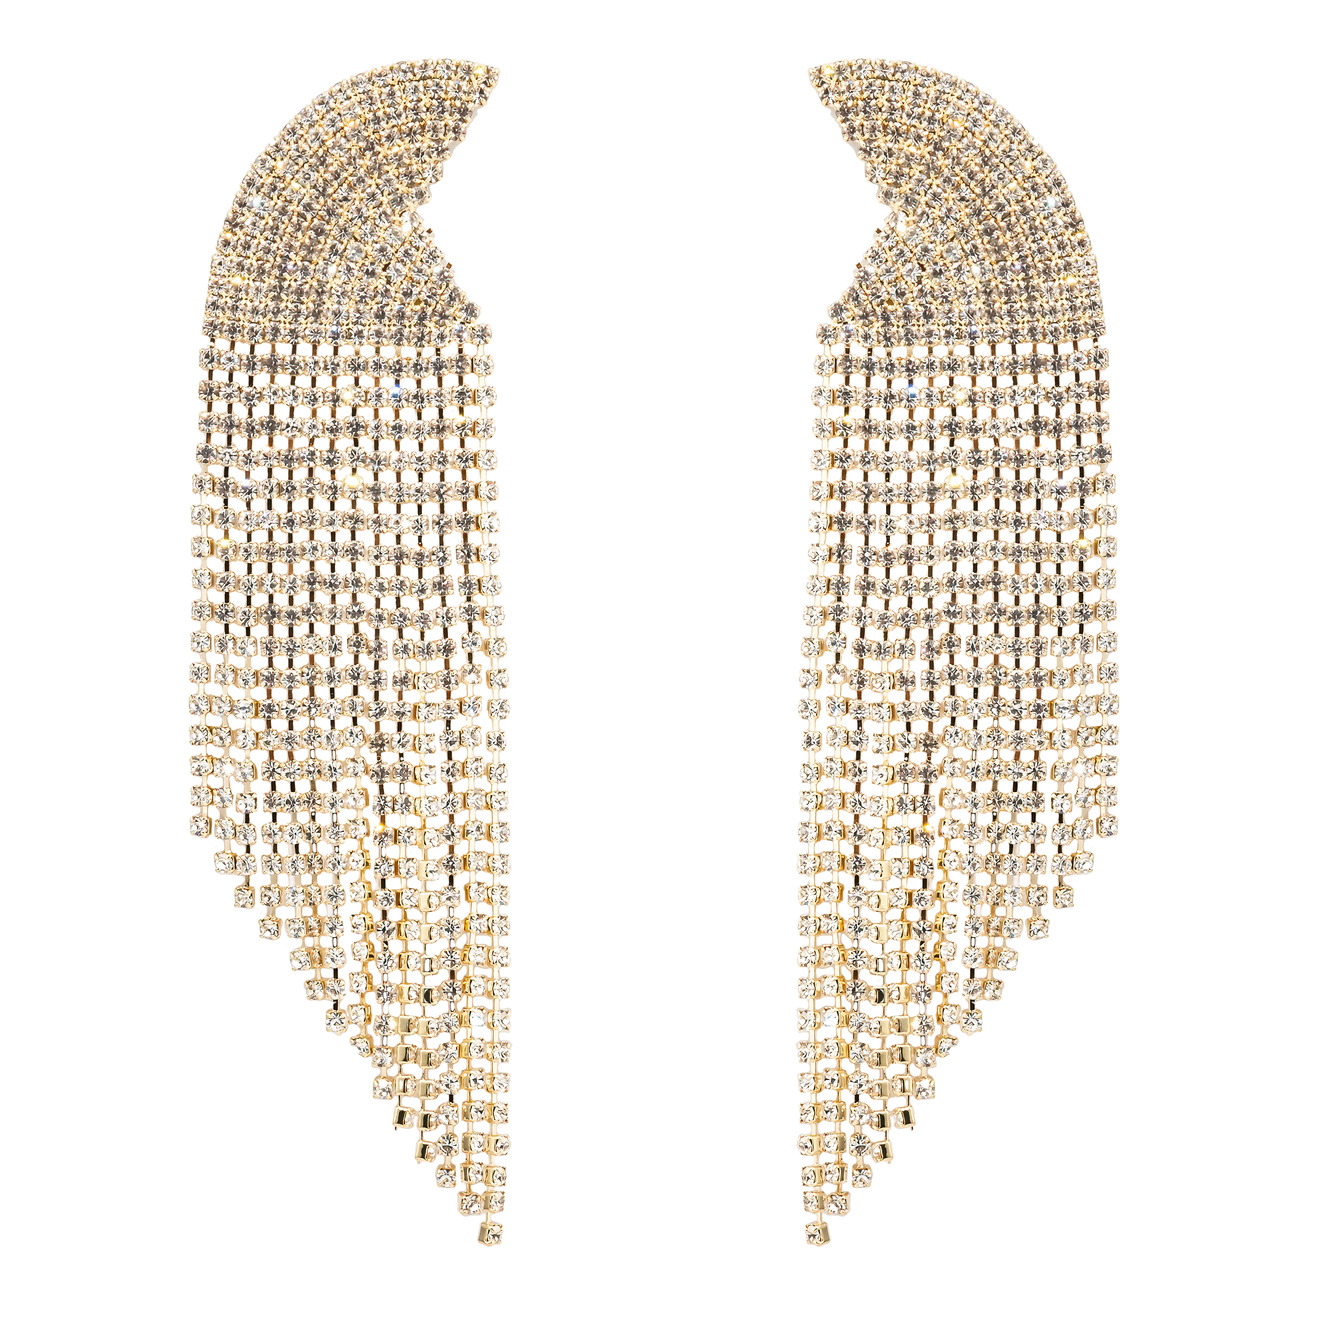 Herald Percy Золотистые серьги-полукруги с кристаллами herald percy двойные золотистые серьги с белыми кристаллами